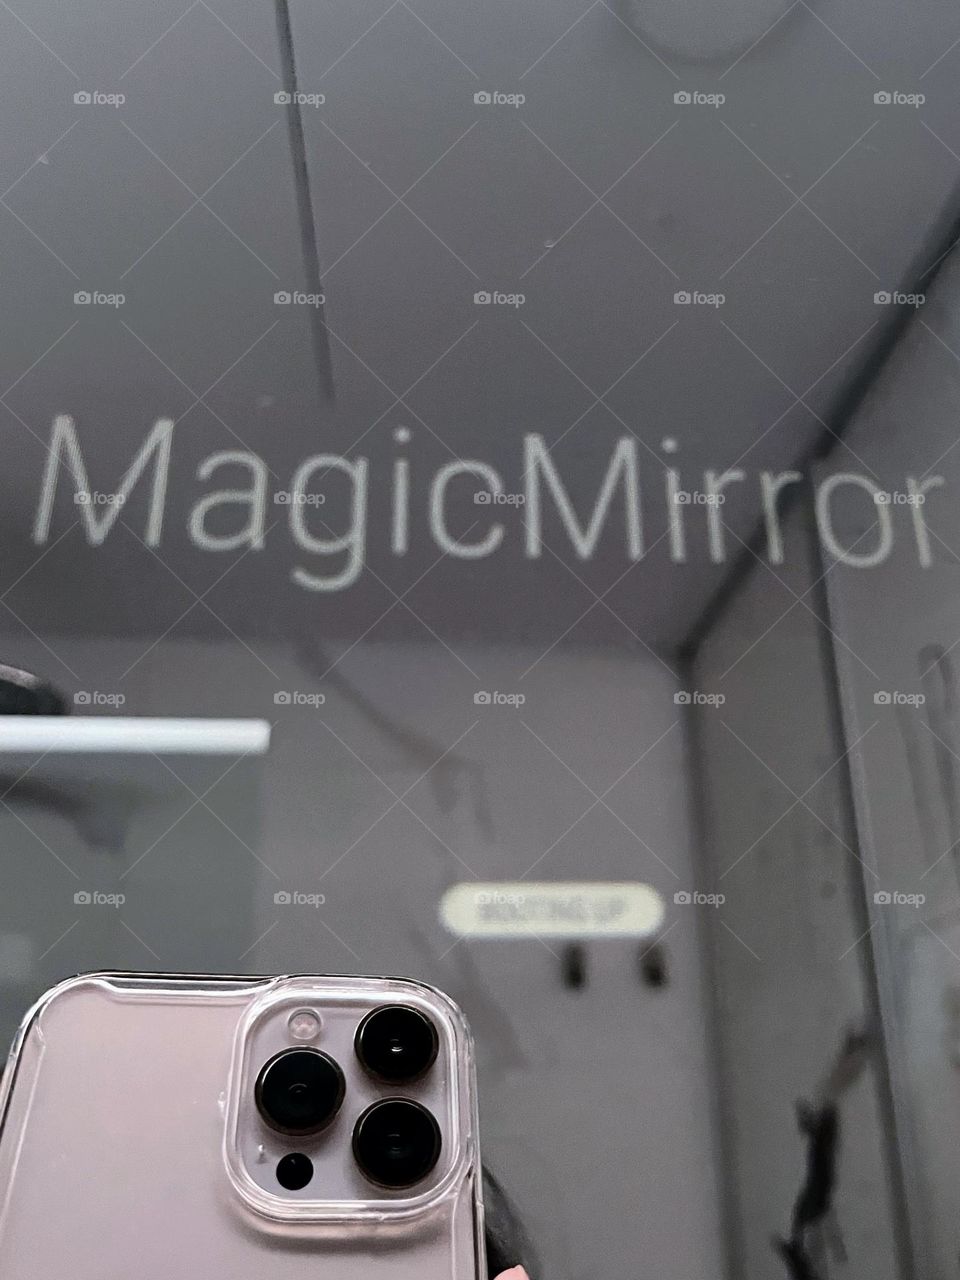 Magic mirror 